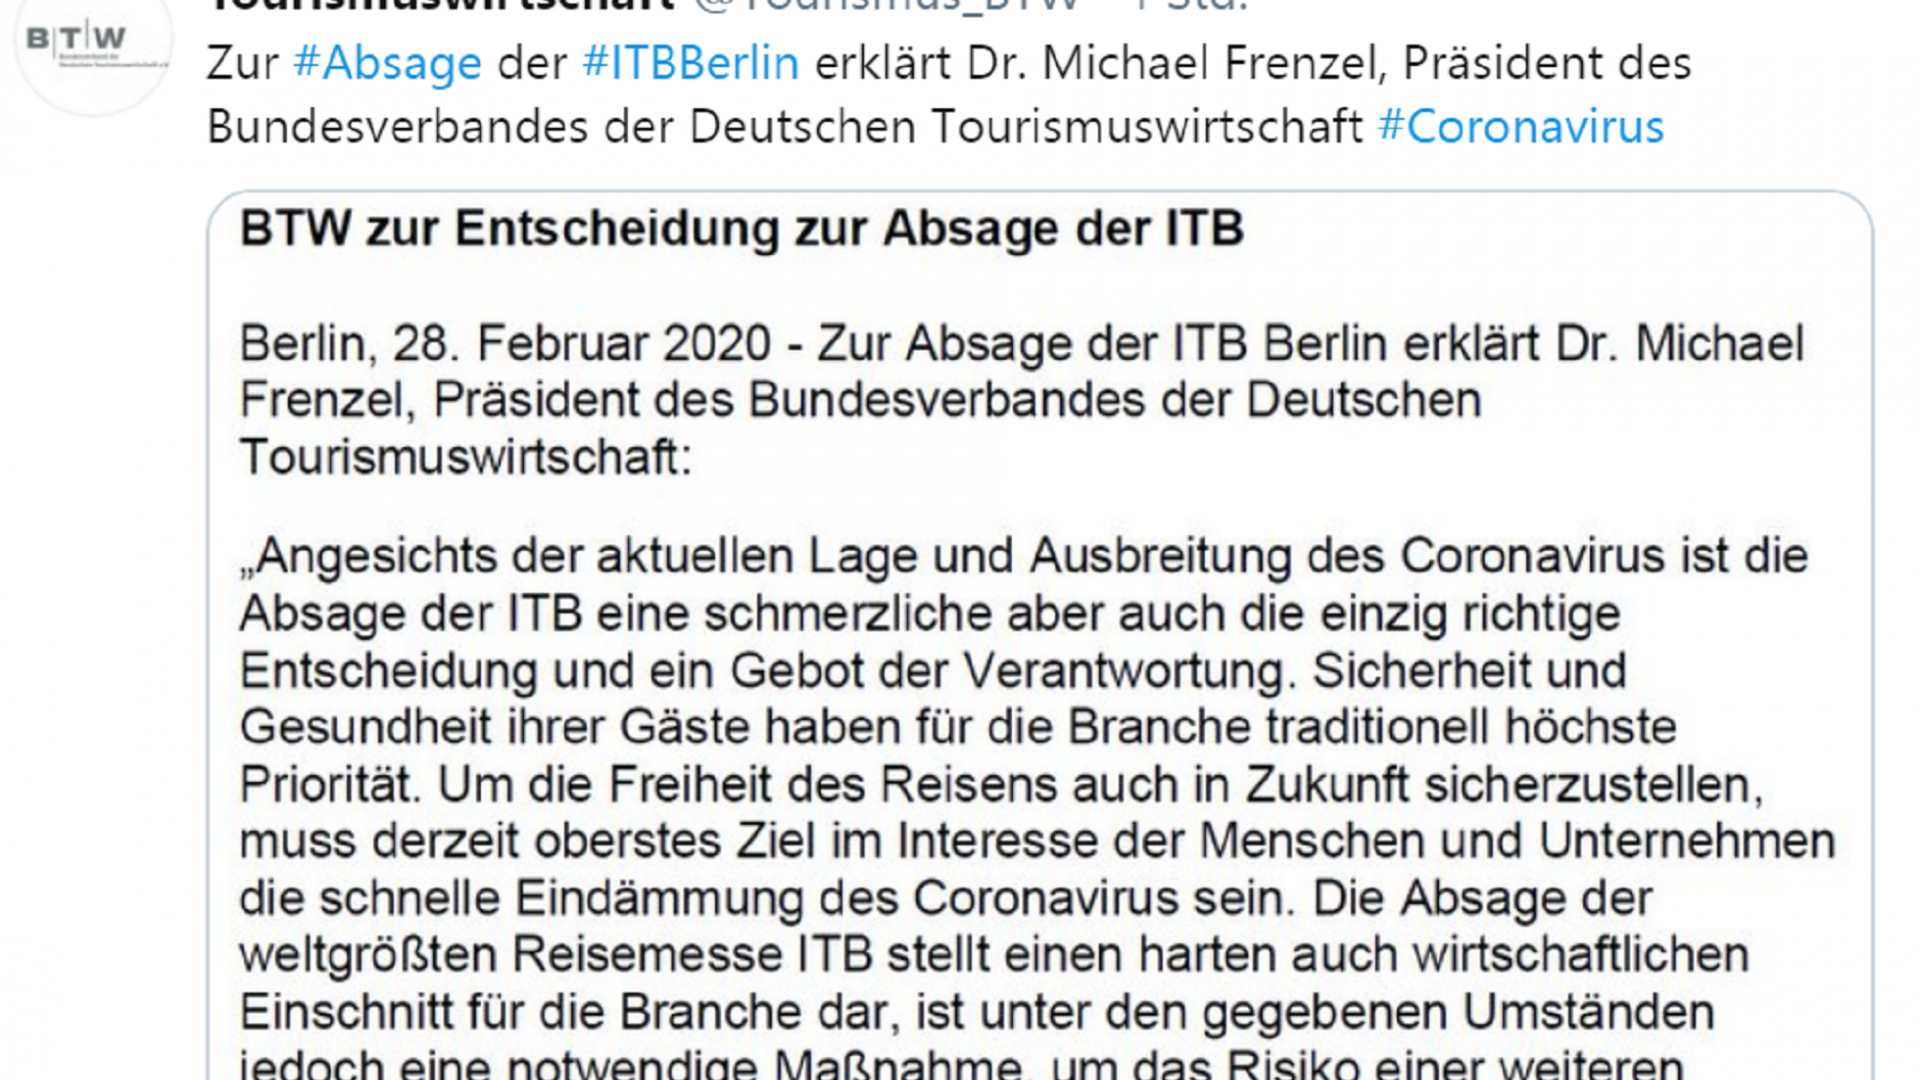 Twitter-Beitrag von Tourismuswirtschaft zur Absage der iTB Berlin